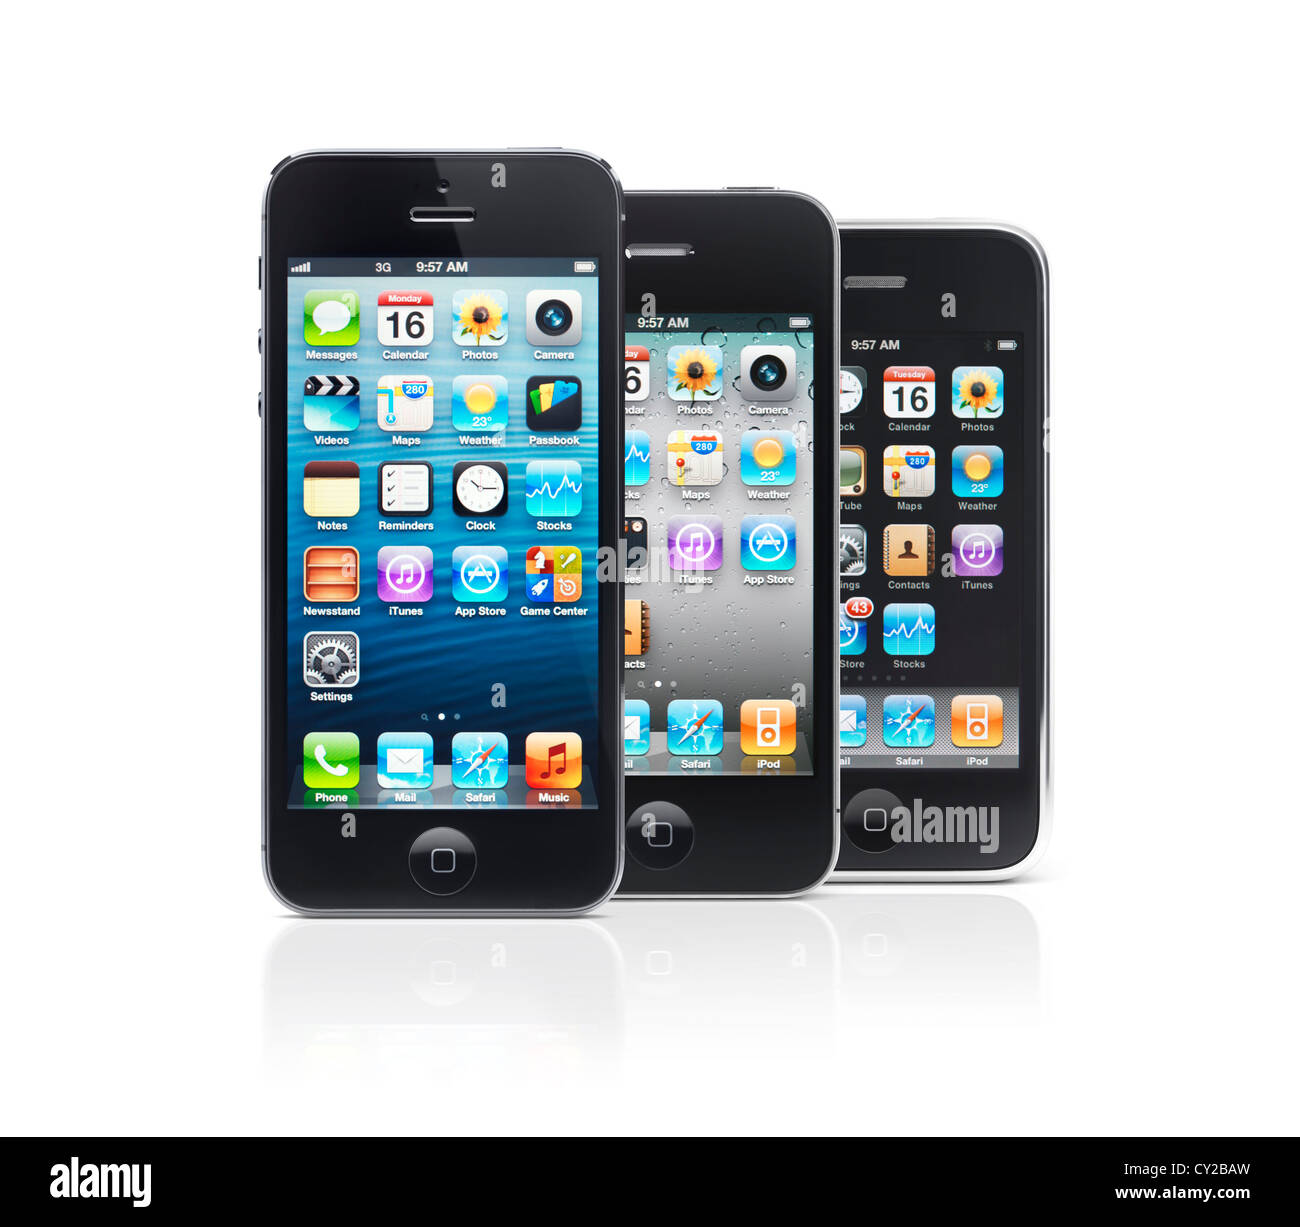 Drei Smartphones Apple iPhone 5, iPhone 4 und iPhone 3 isoliert auf weißem Hintergrund Stockfoto